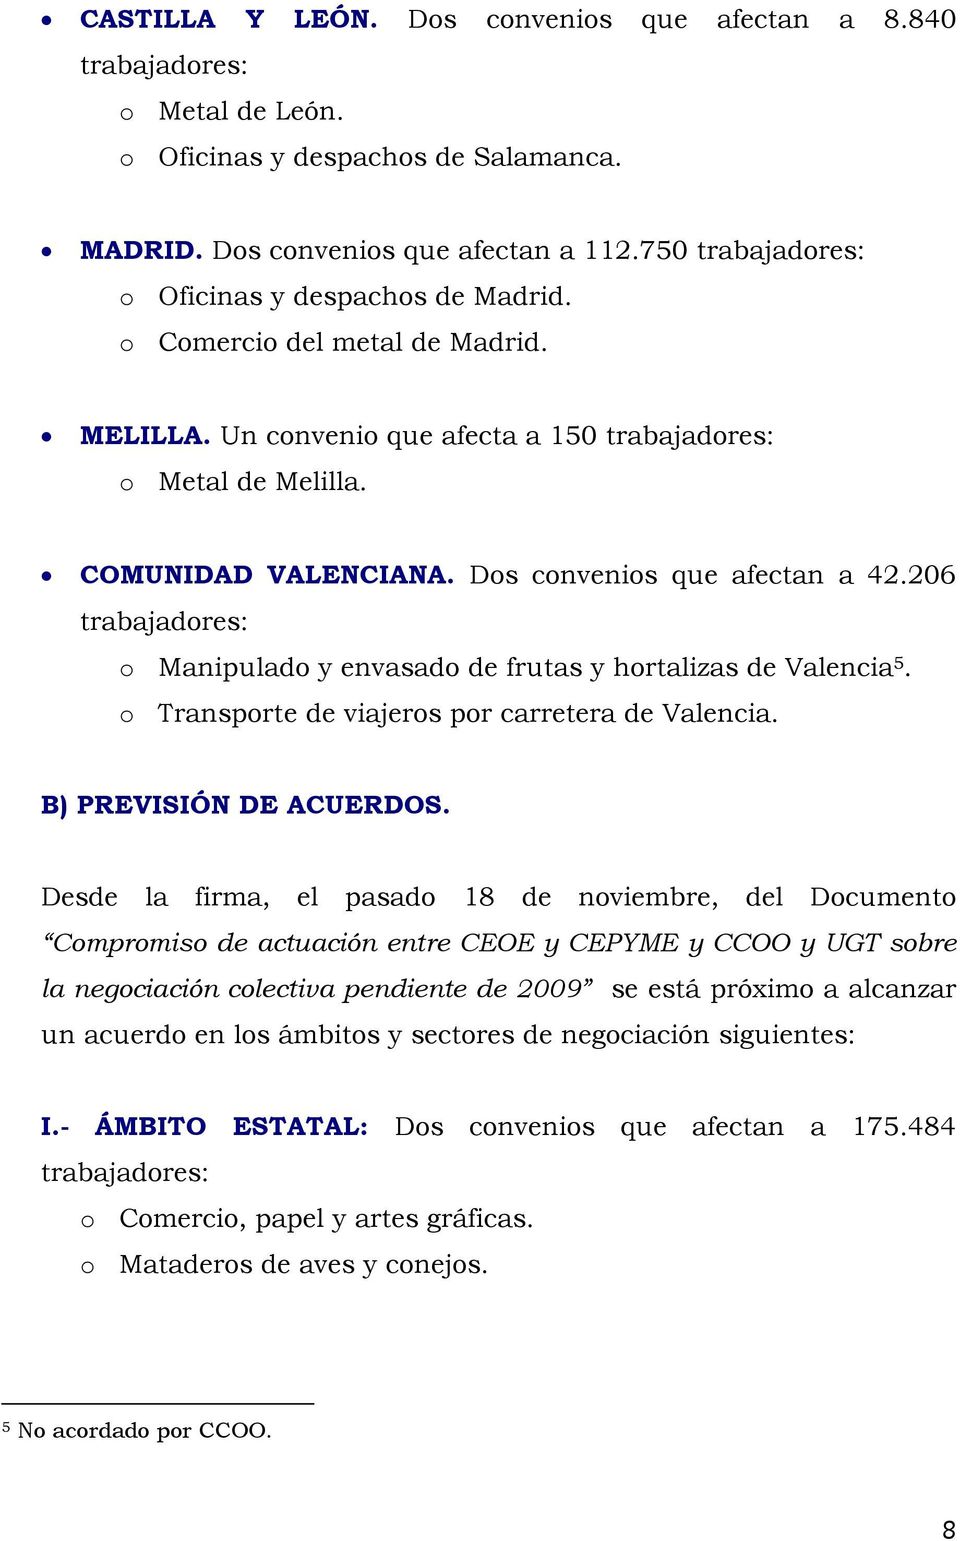 Dos convenios que afectan a 42.206 trabajadores: o Manipulado y envasado de frutas y hortalizas de Valencia 5. o Transporte de viajeros por carretera de Valencia. B) PREVISIÓN DE ACUERDOS.